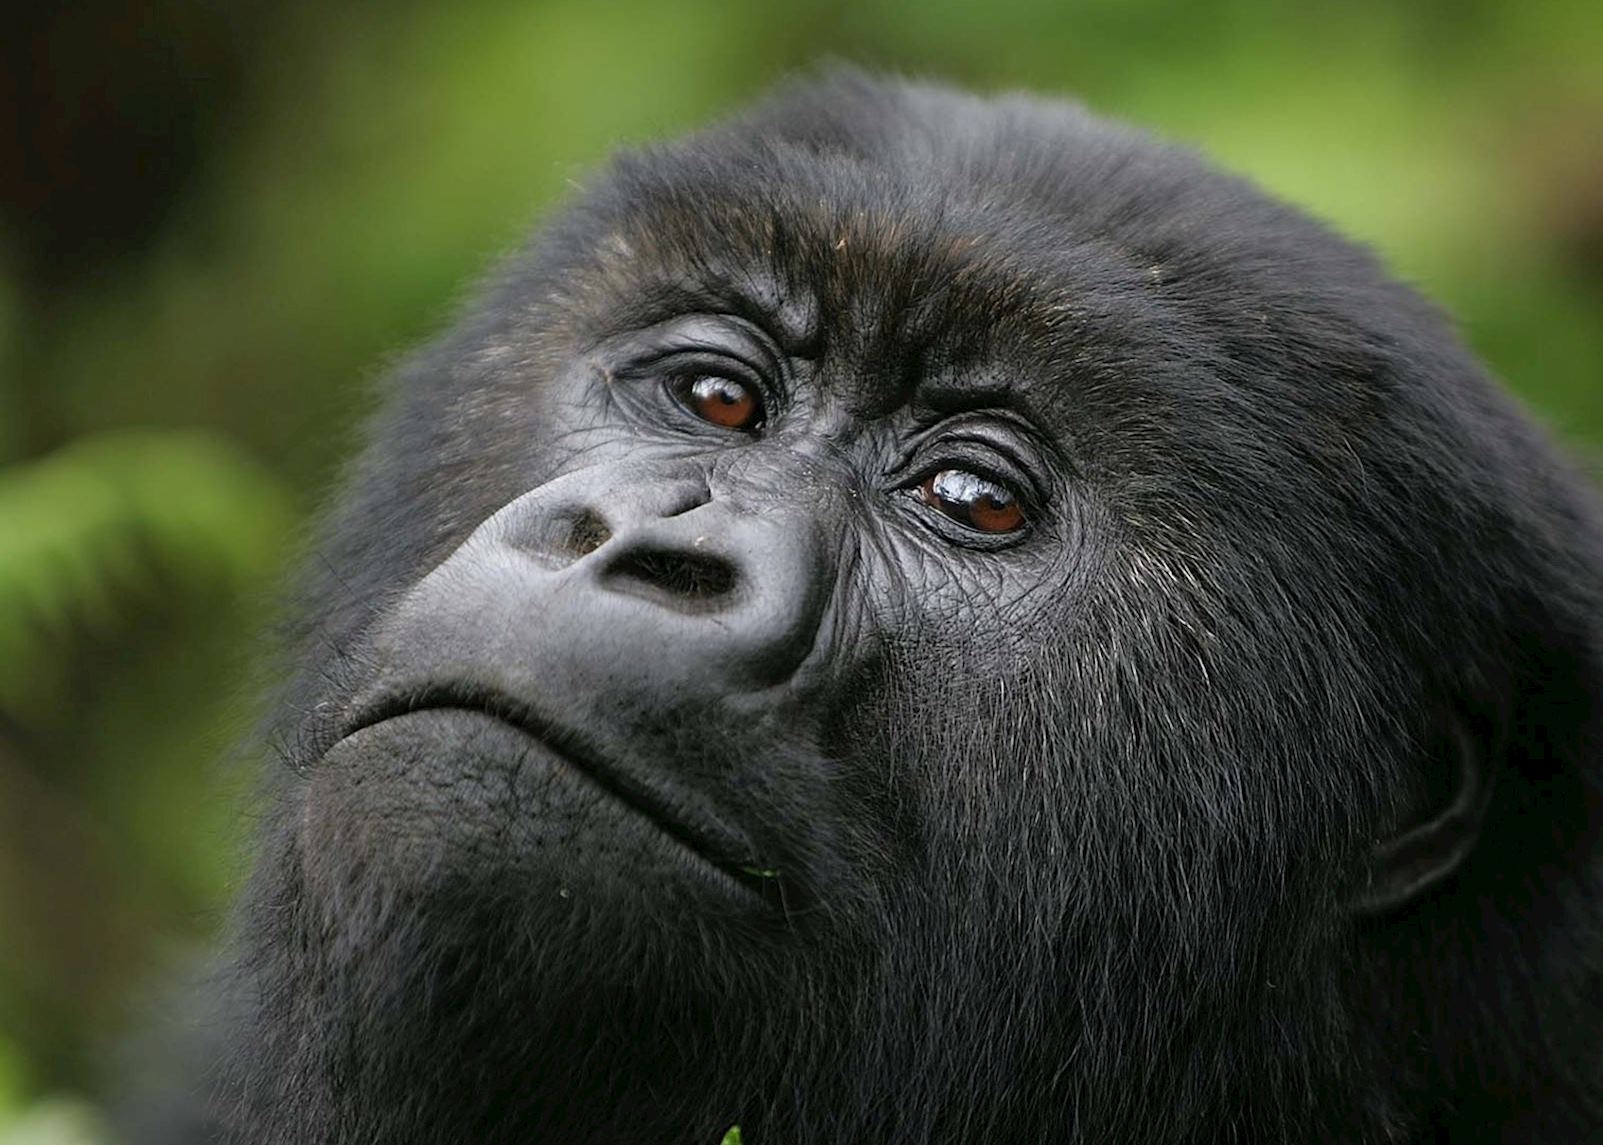 How to Book a Gorilla Trekking Permit in Rwanda